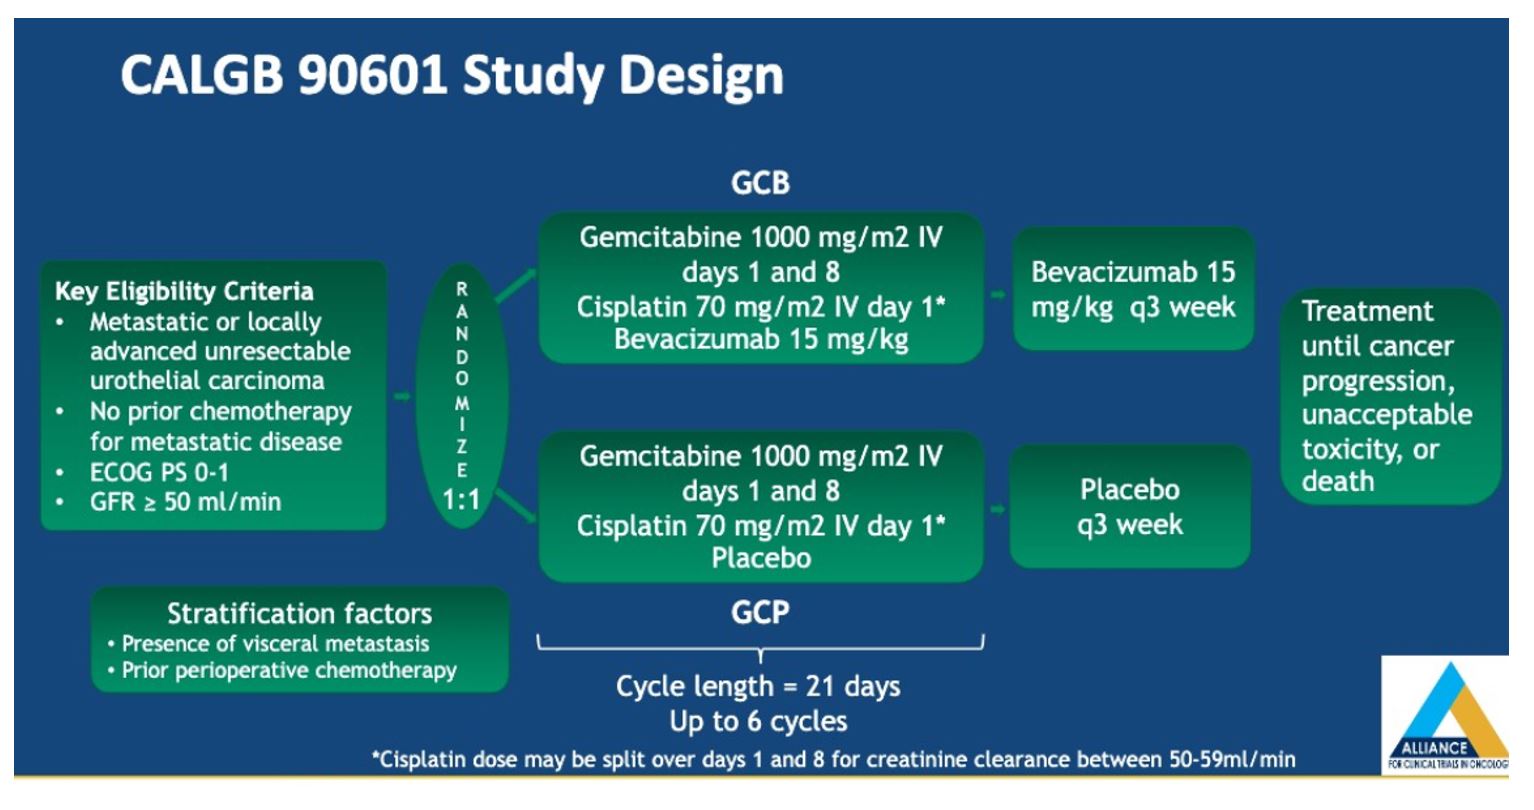 ASCO 2019 CALGB 90601 study design